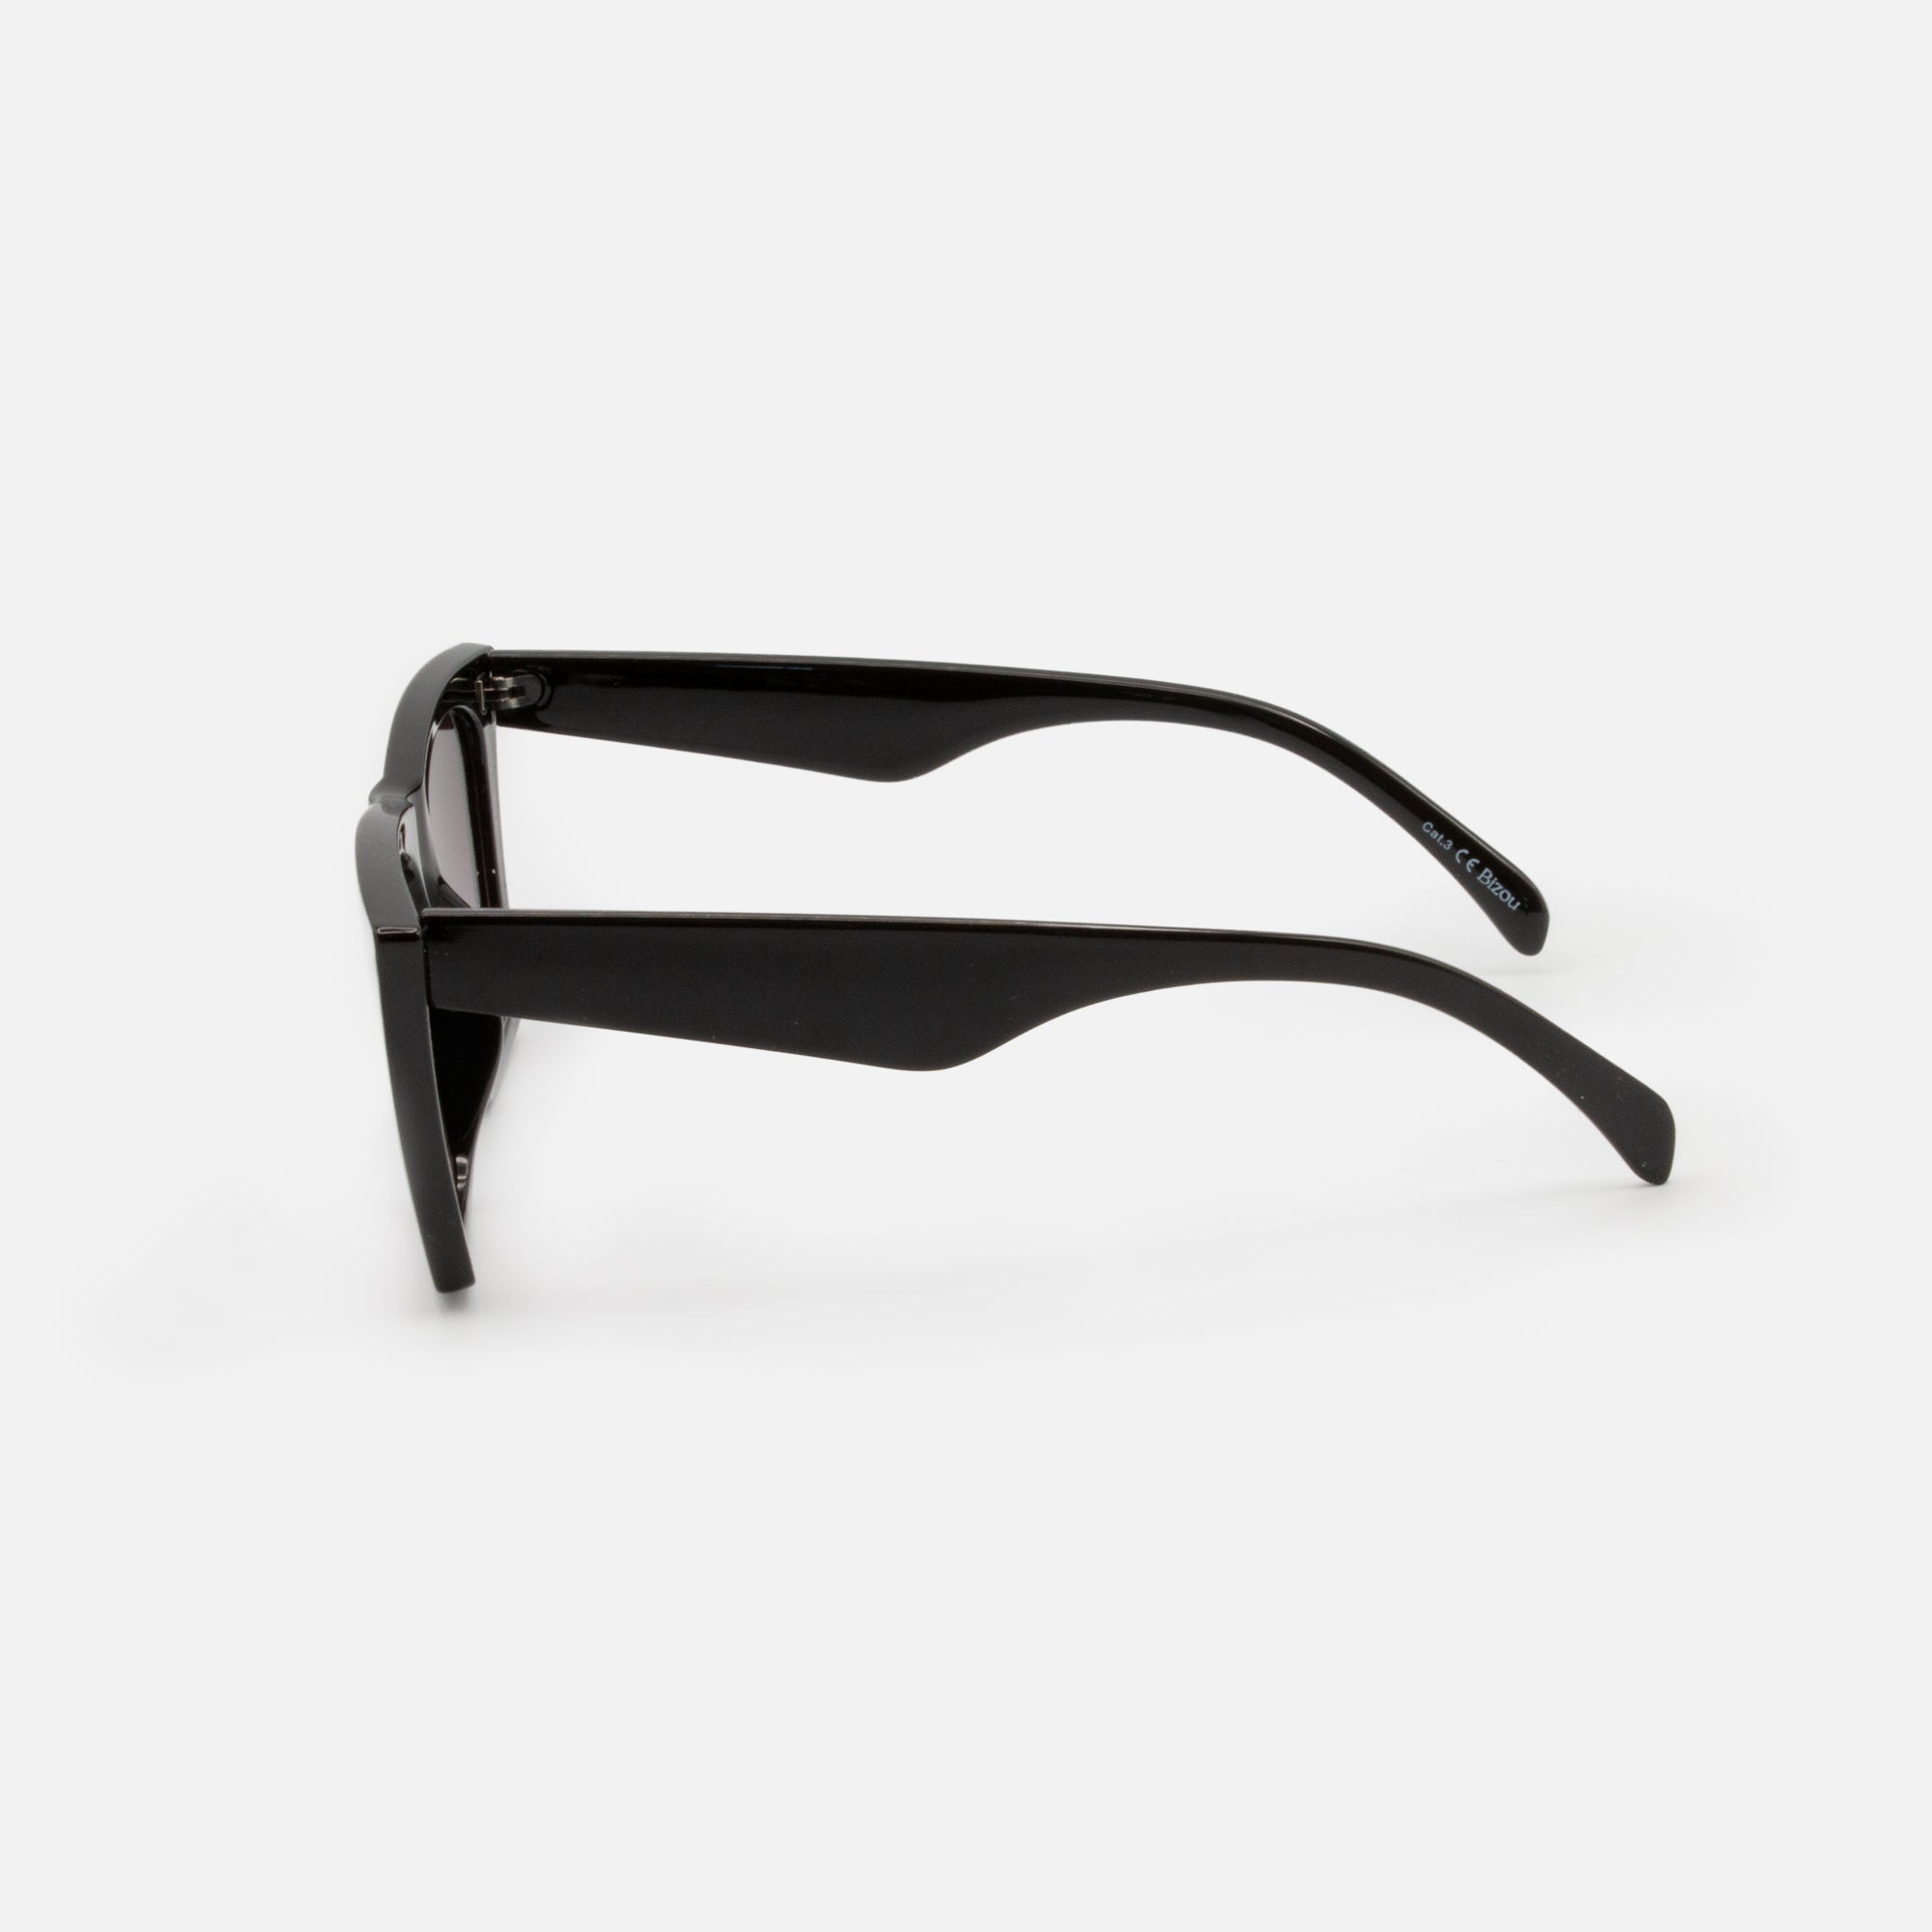 Black angular cat-eye sunglasses